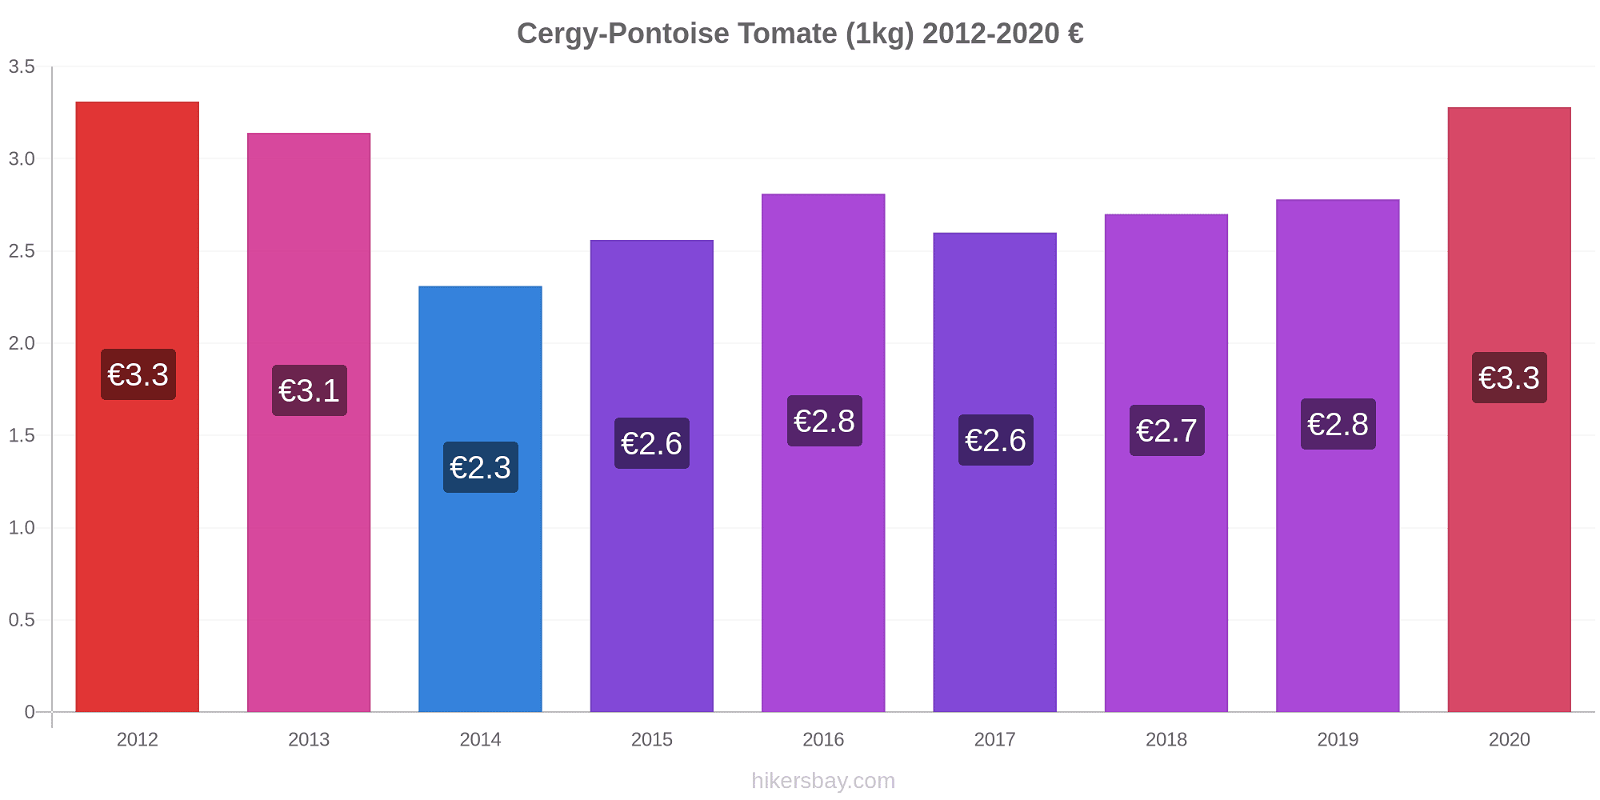 Cergy-Pontoise cambios de precios Tomate (1kg) hikersbay.com